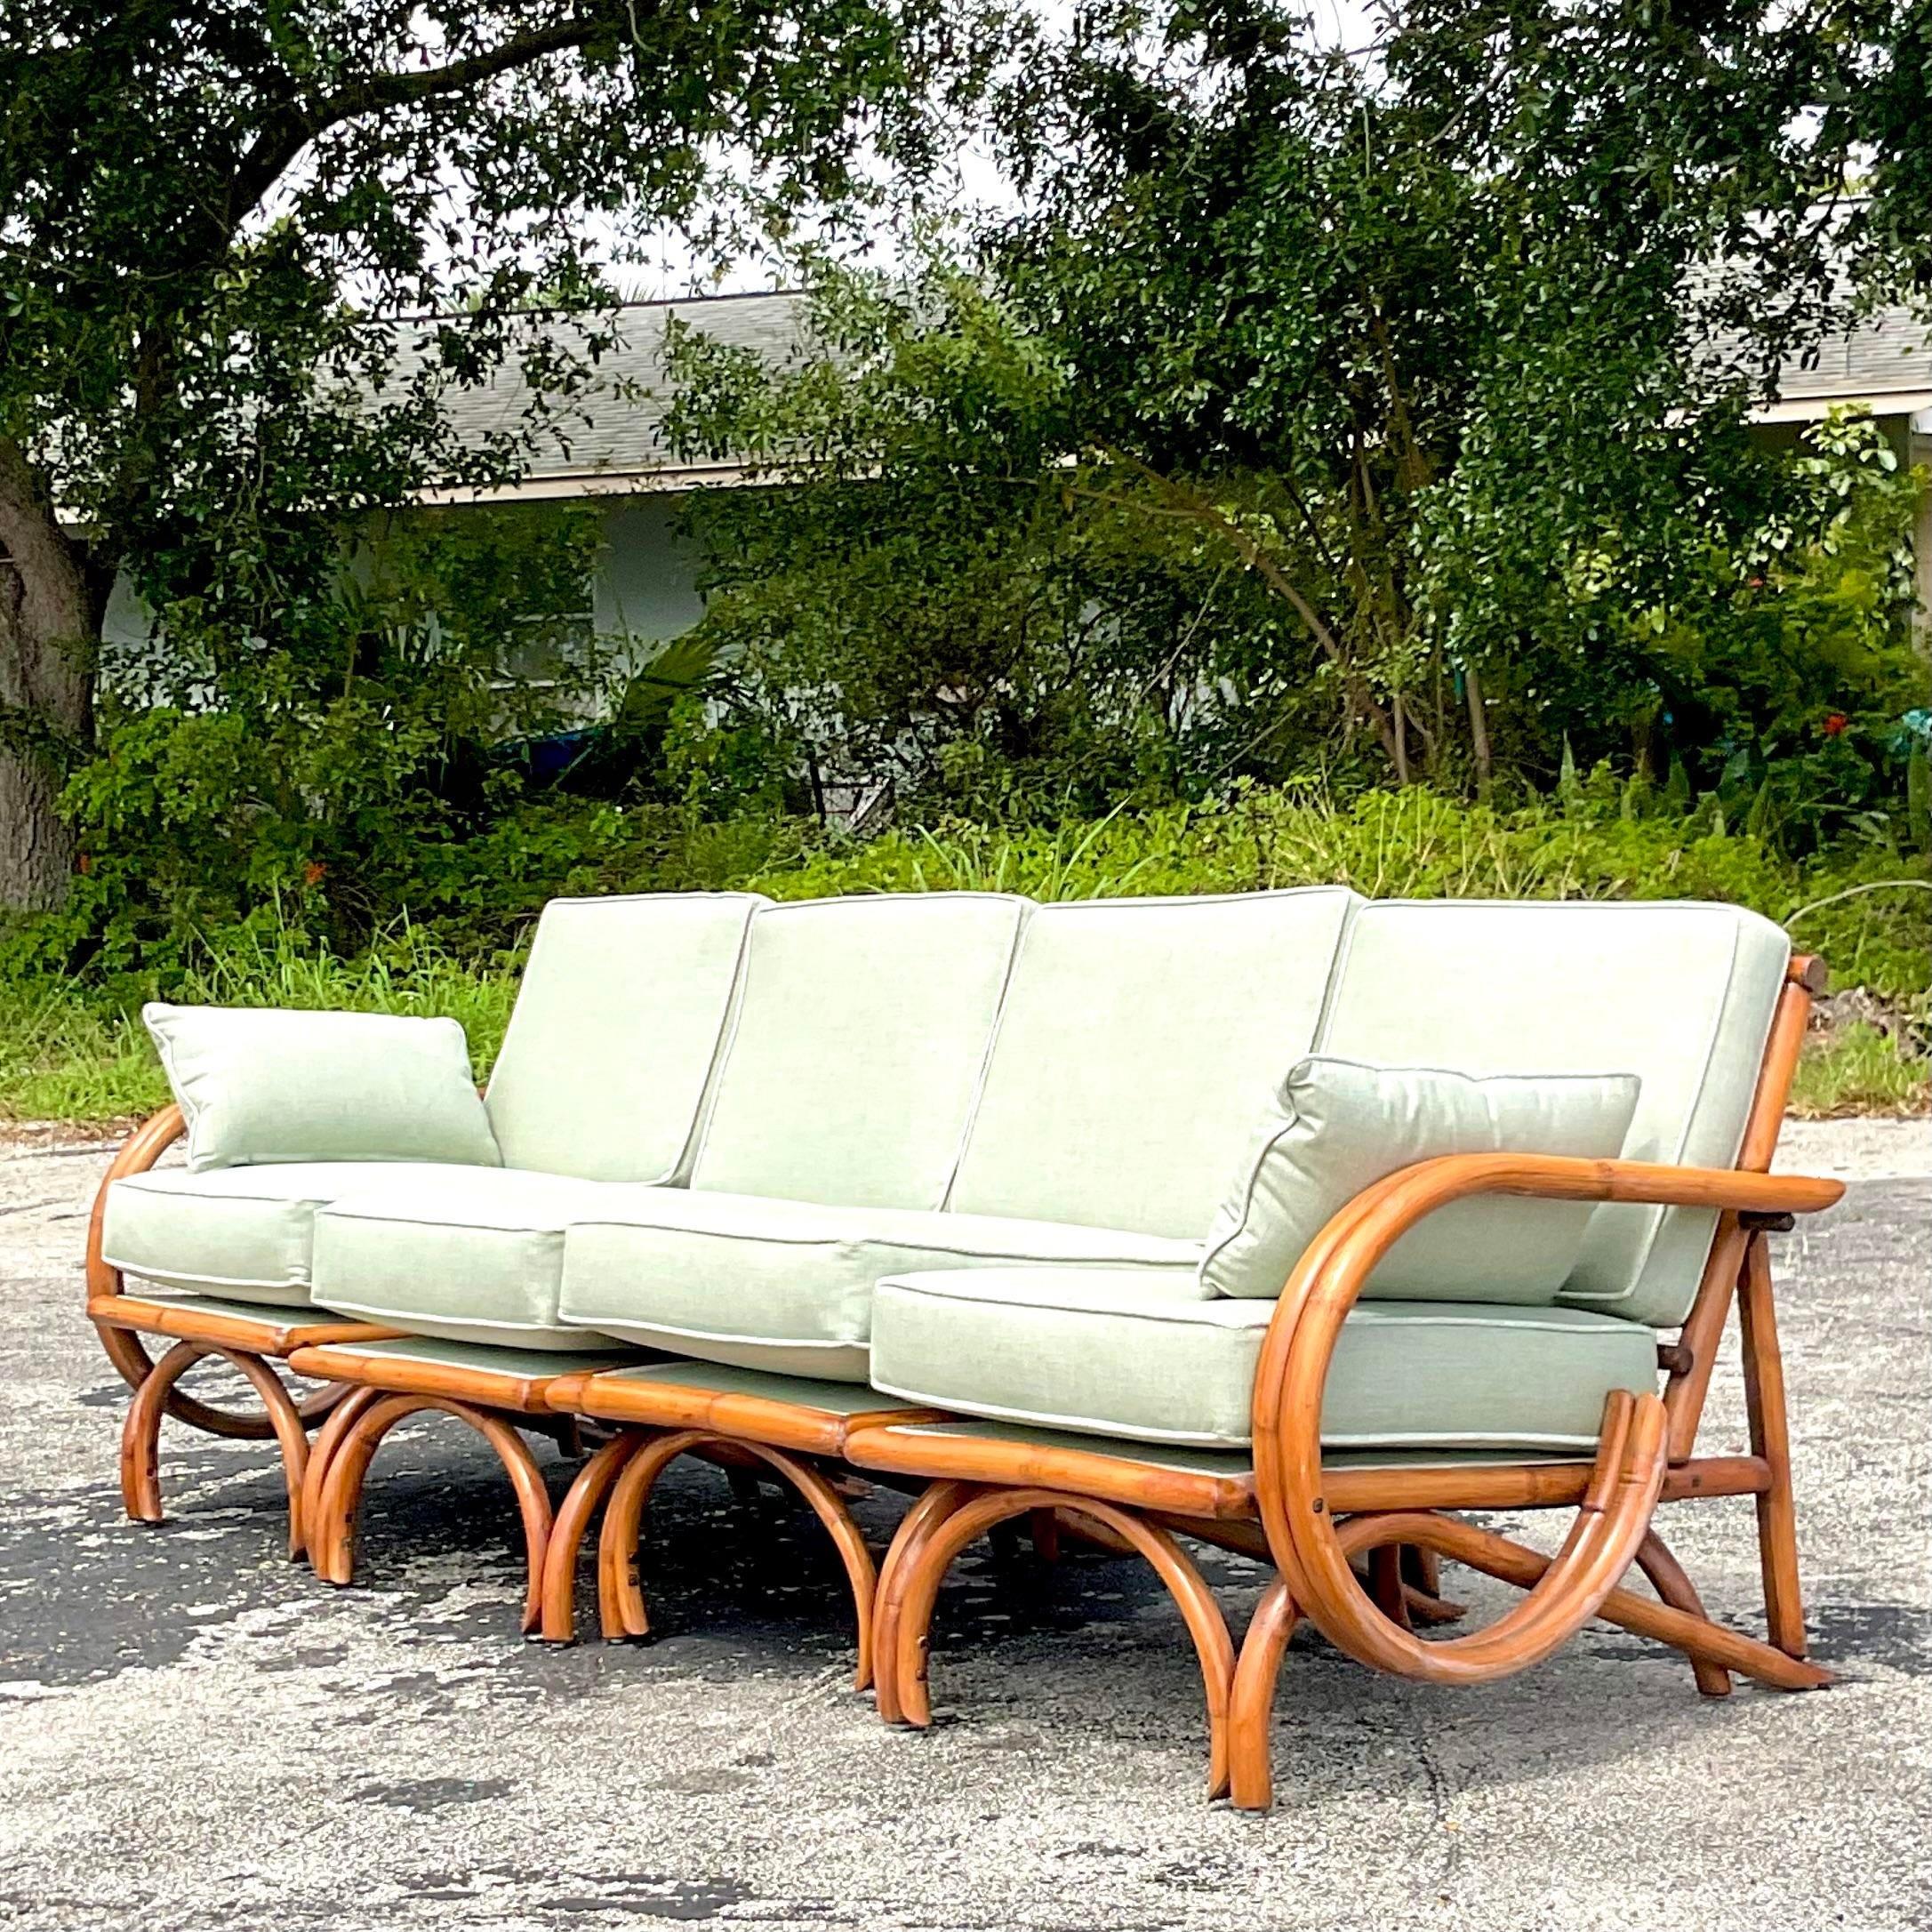 Eine fantastische Vintage Coastal vier Sitz Sofa. Schickes gebogenes Rattan mit Schlaufenseiten und hoher Rückenlehne. Vollständig restauriert mit einer kompletten Überarbeitung des Rattans und einer neuen Sunbrella-Polsterung mit Krypton-Behandlung